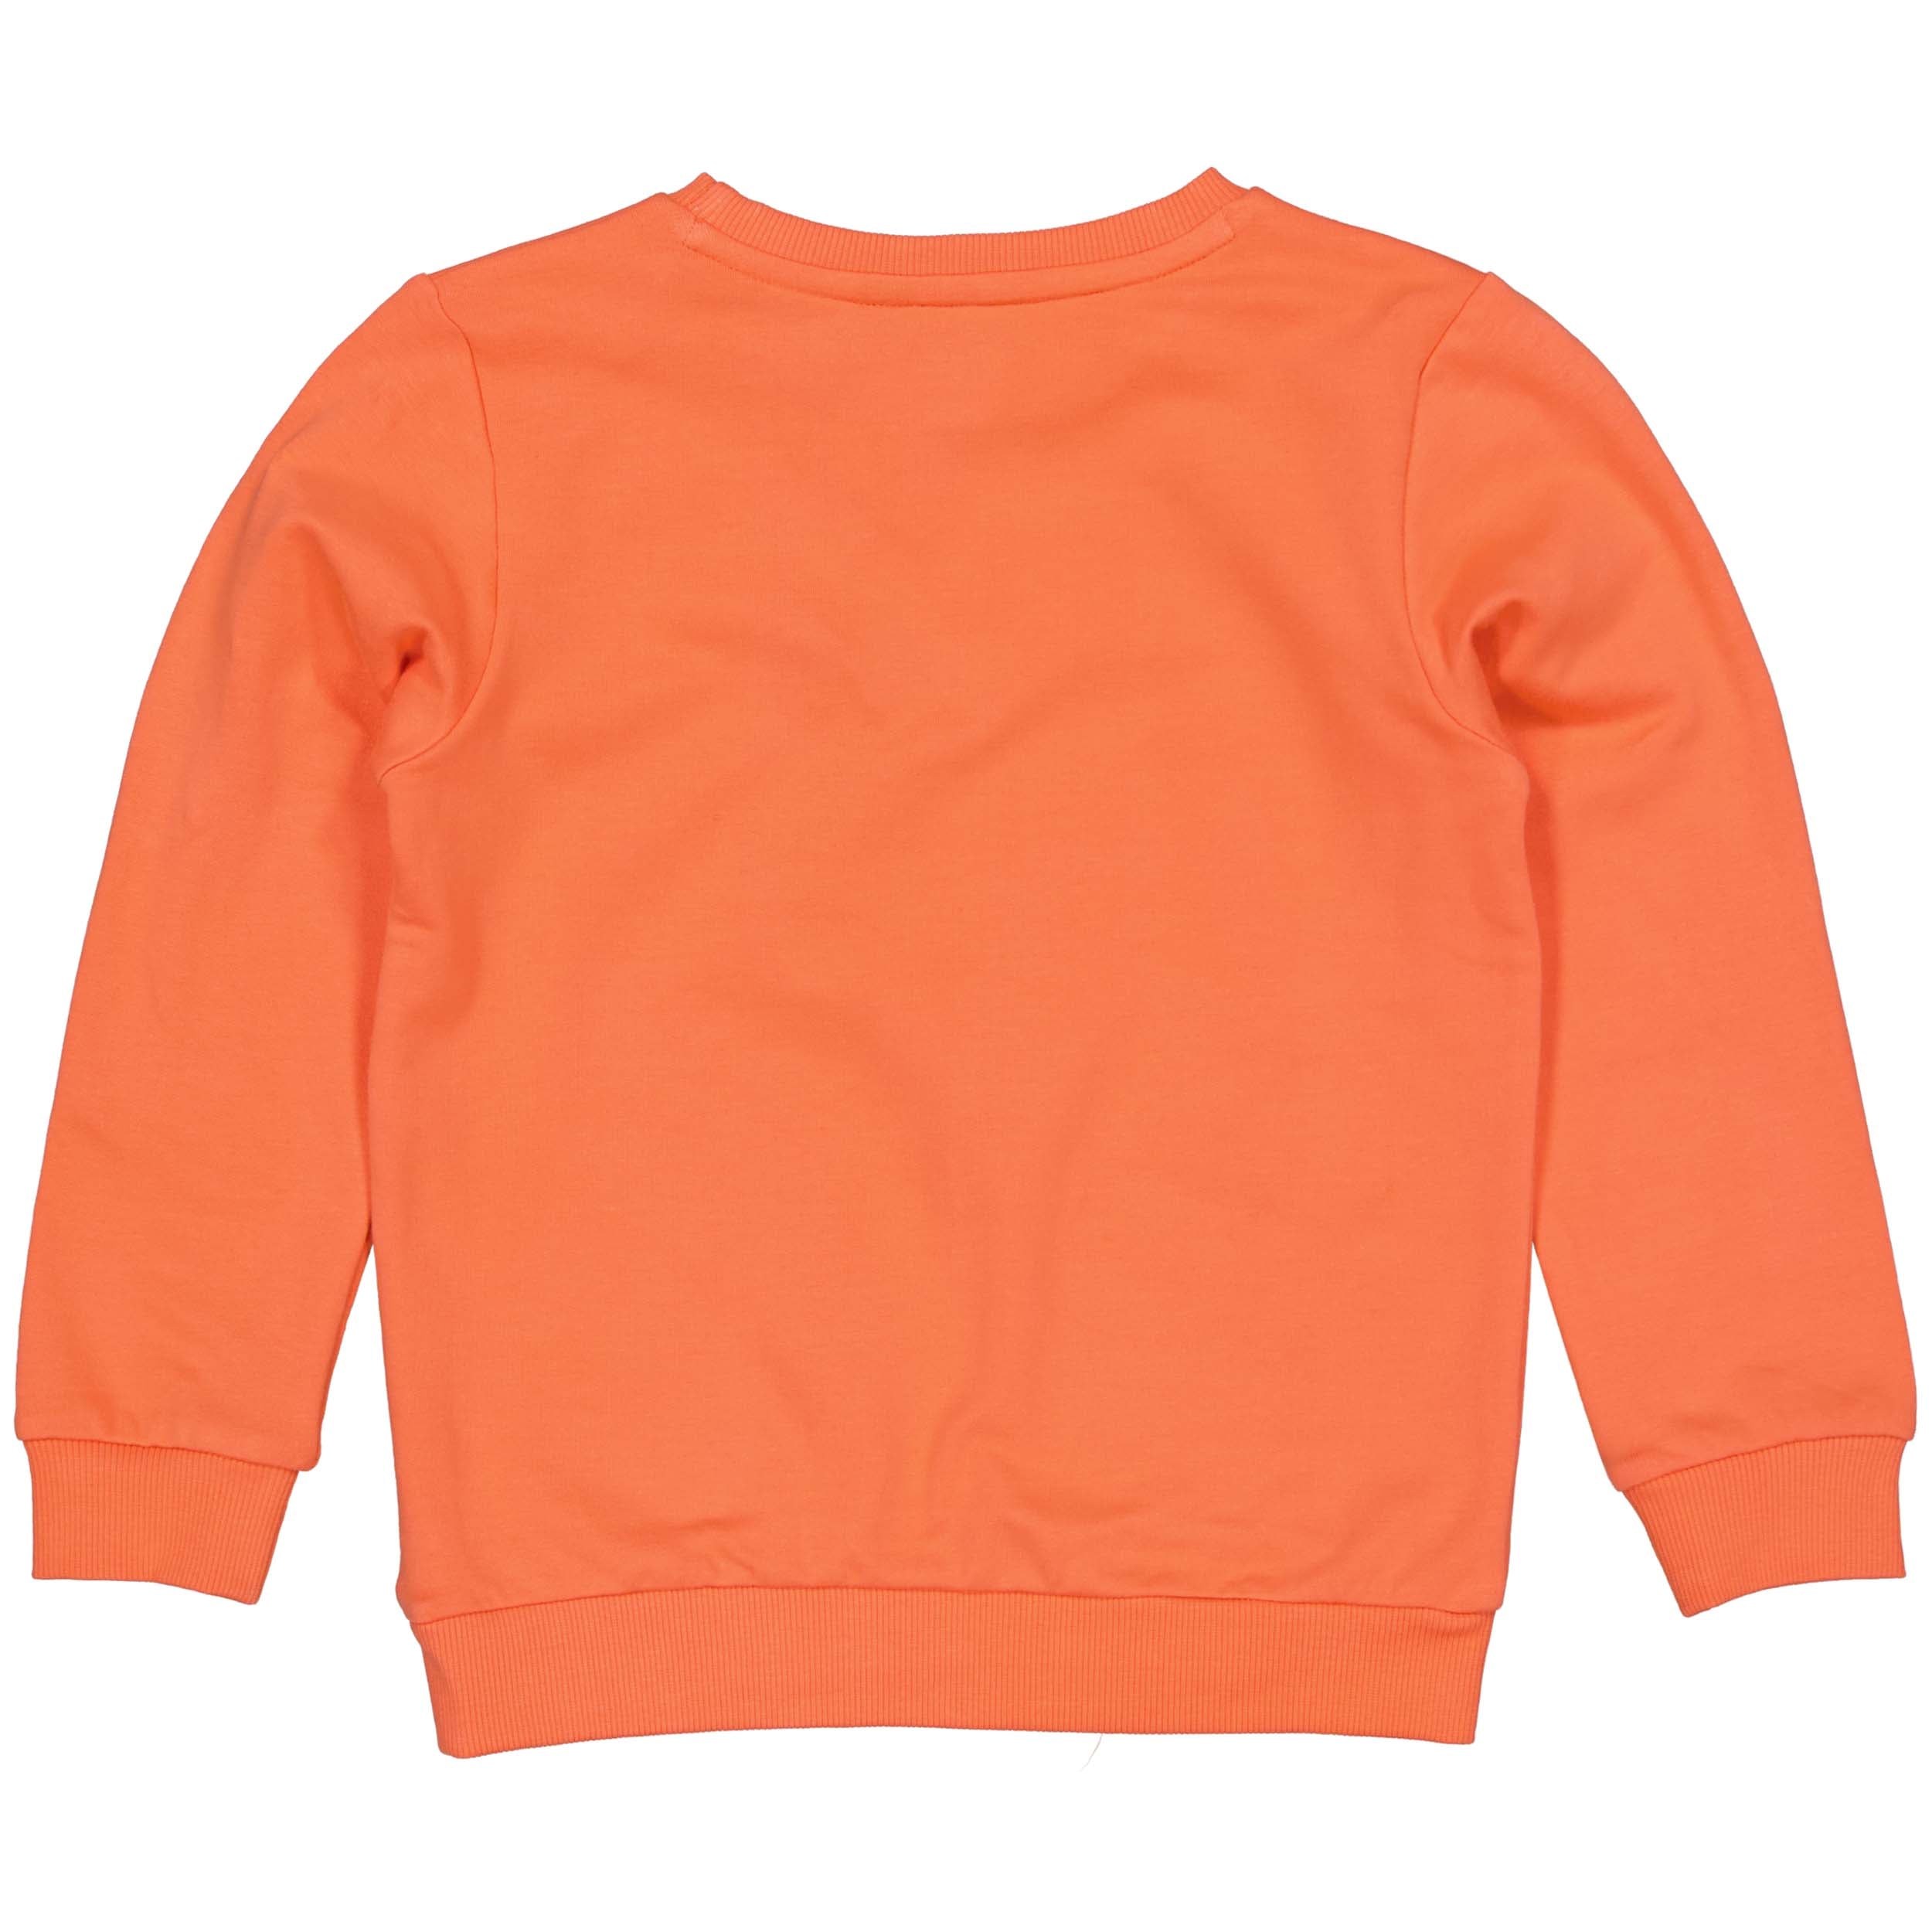 Jongens Sweater AIMARQW231 van Quapi in de kleur Orange Red in maat 134-140.